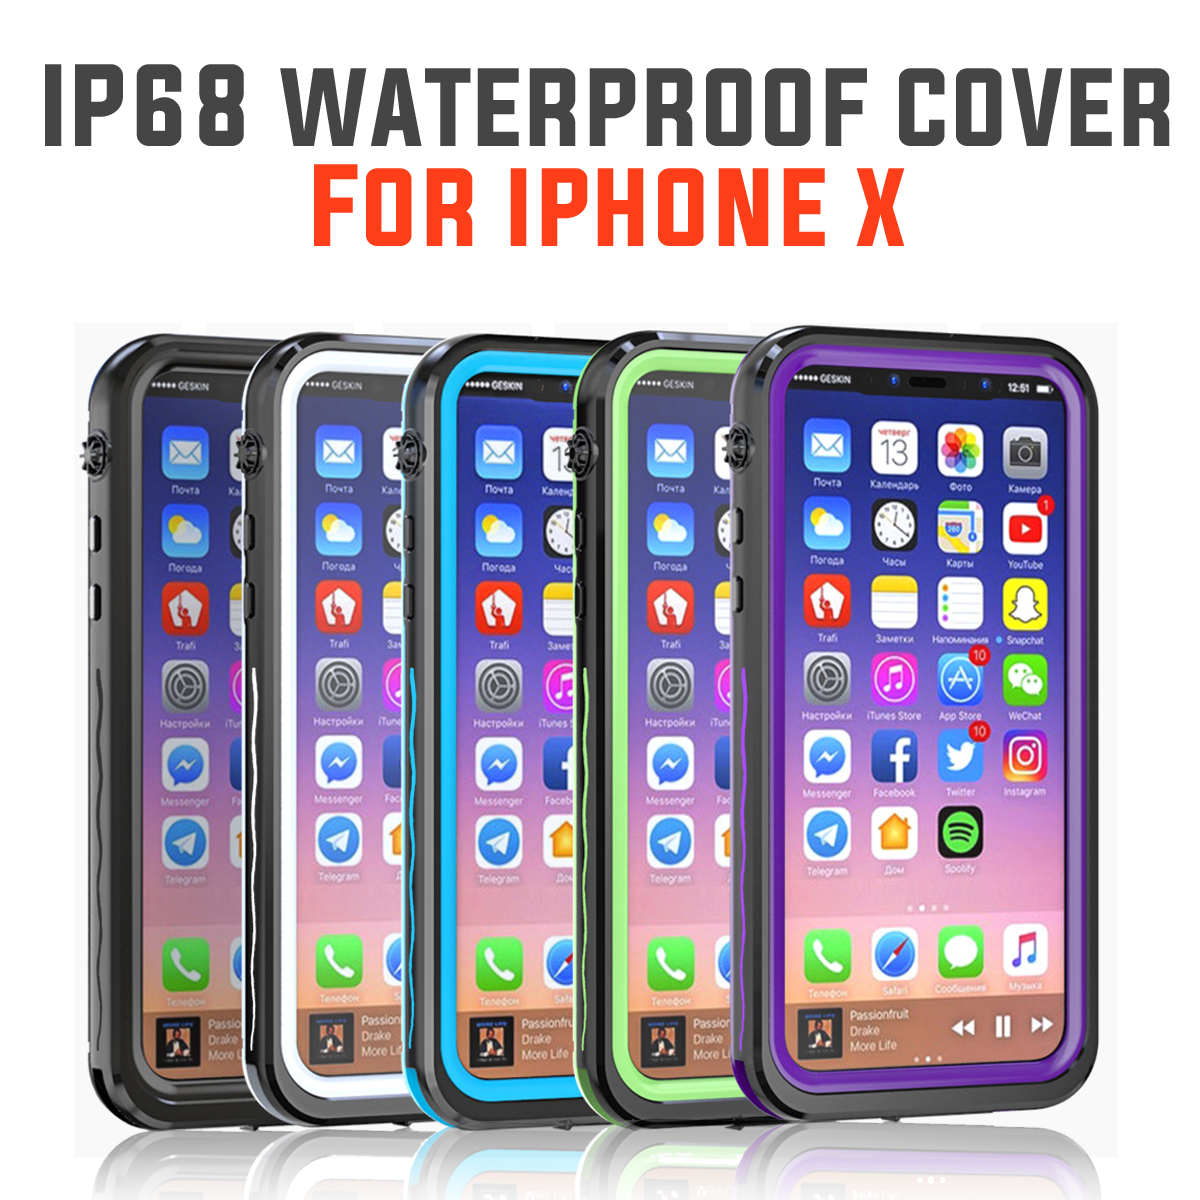 IP68-WaterproofDirtproofSnowproofShockproof-Protective-Case-For-iPhone-X-1330384-1